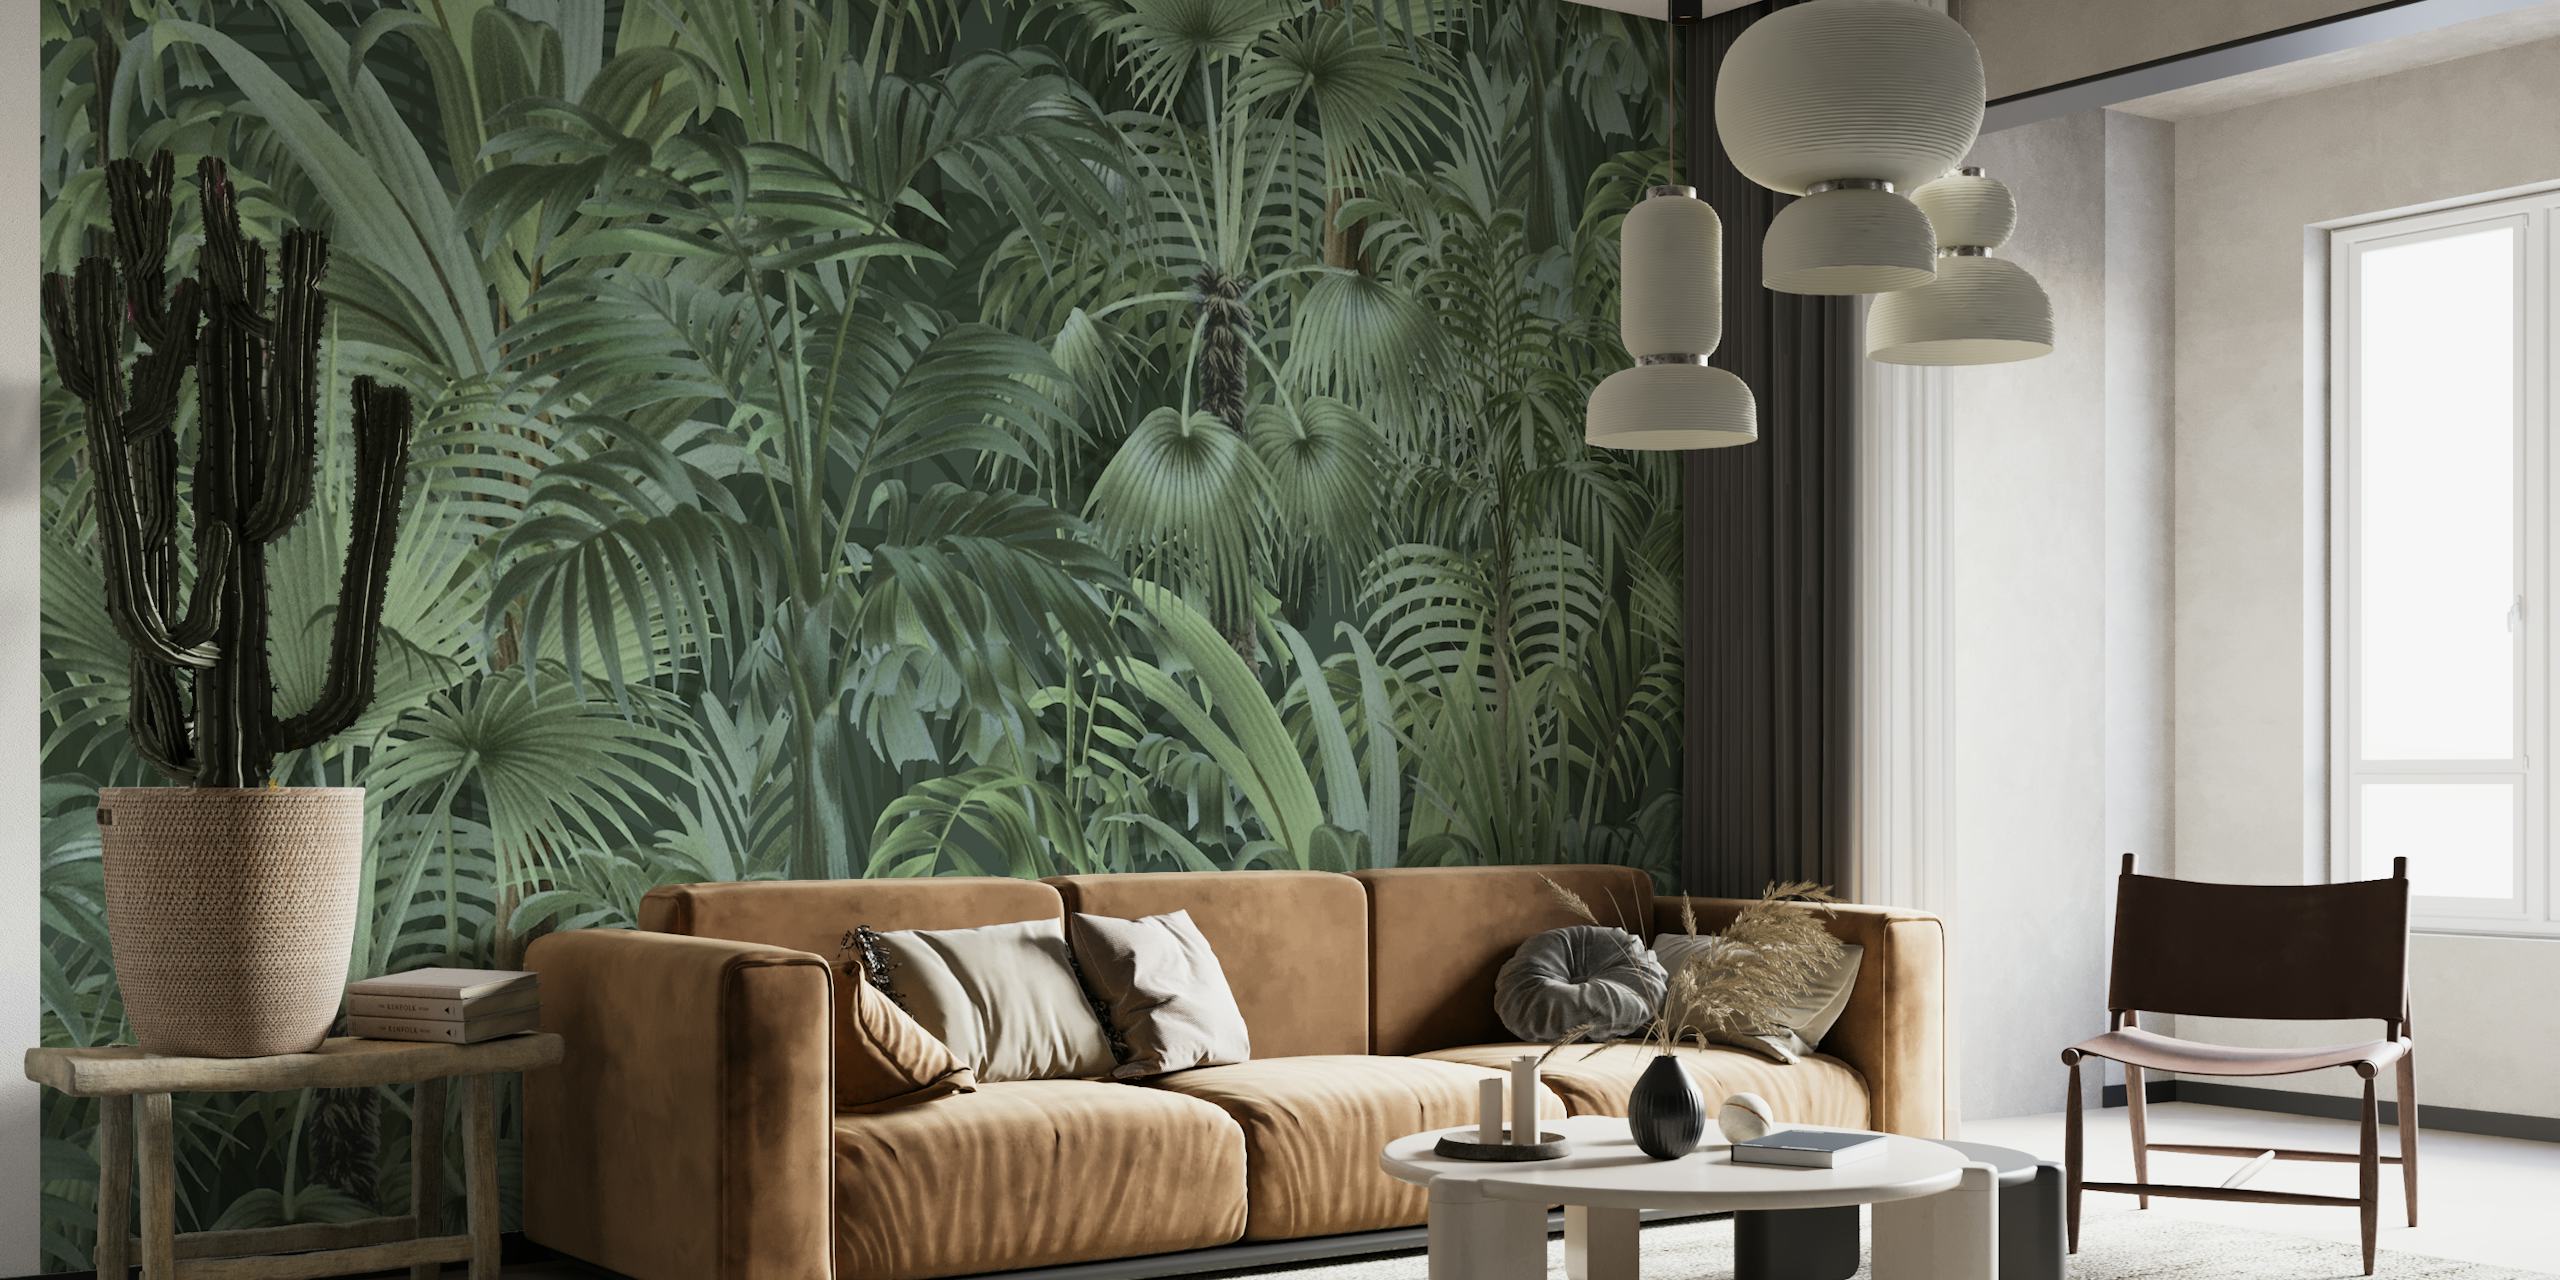 Fotomural vinílico de parede de folhagem tropical densa com vários tons de verde, criando uma atmosfera encantadora de selva.